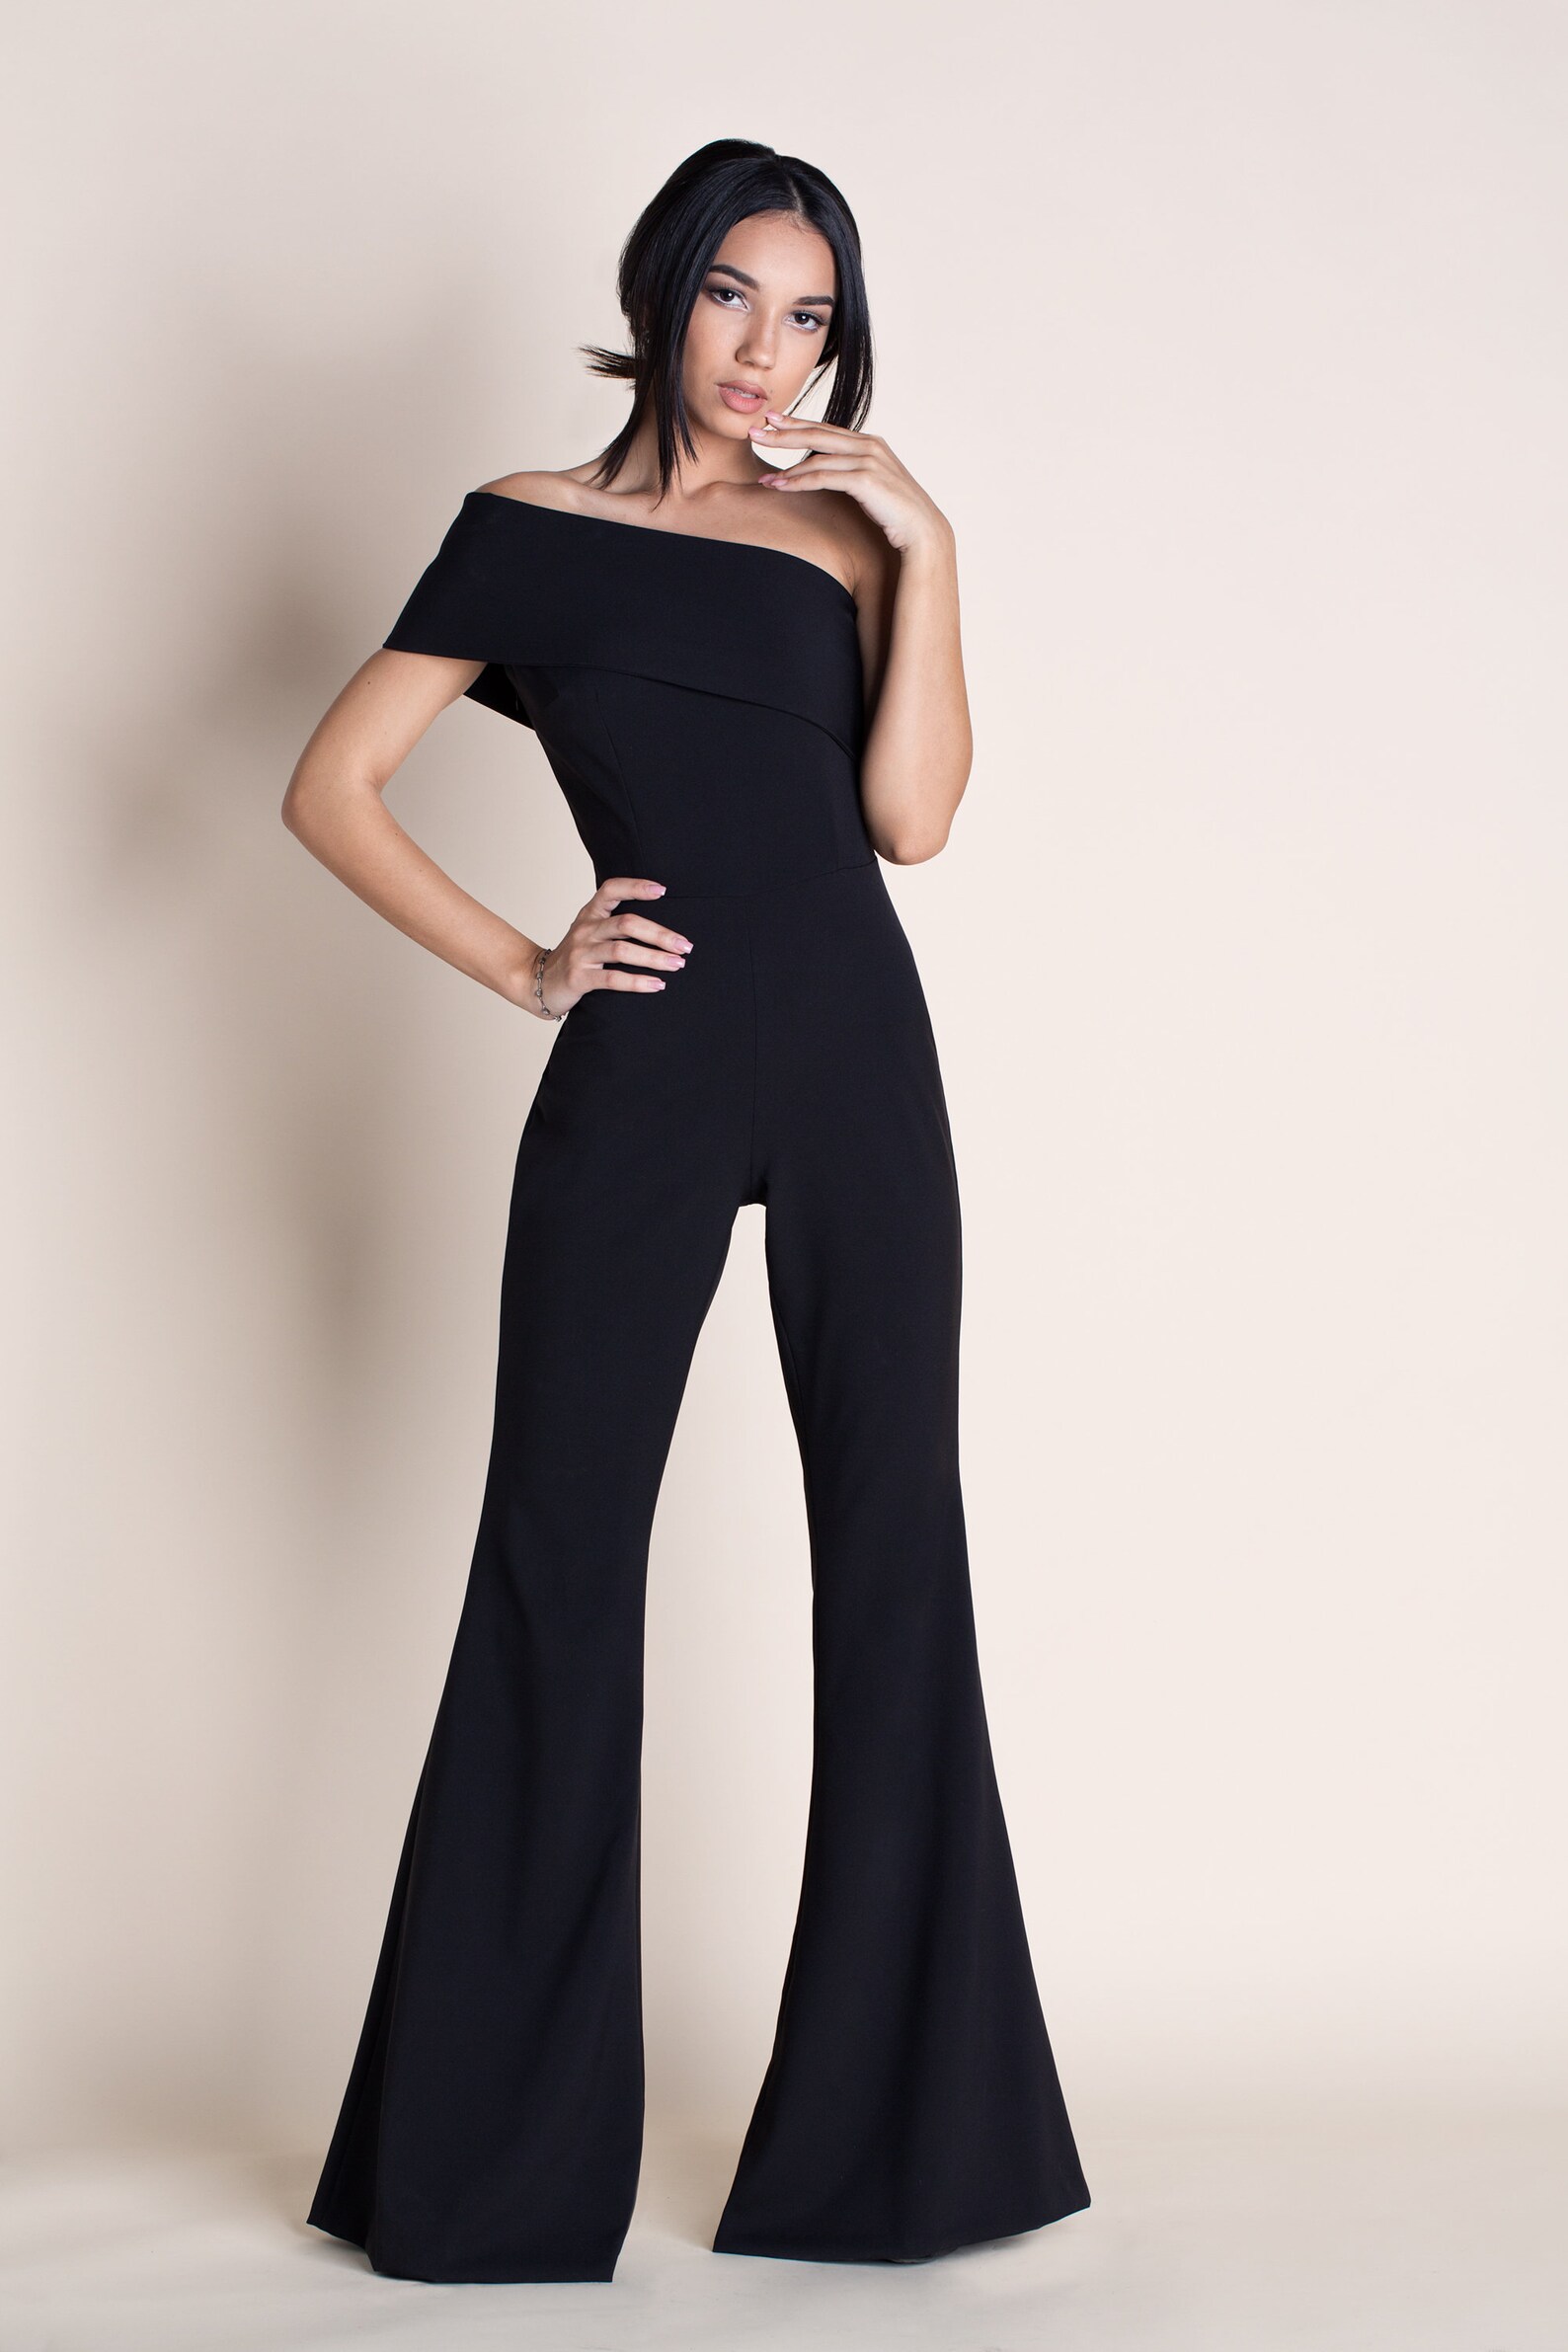 SARA Elegant Jumpsuit Sewing Pattern 34 36 38 40 42 44 - Etsy